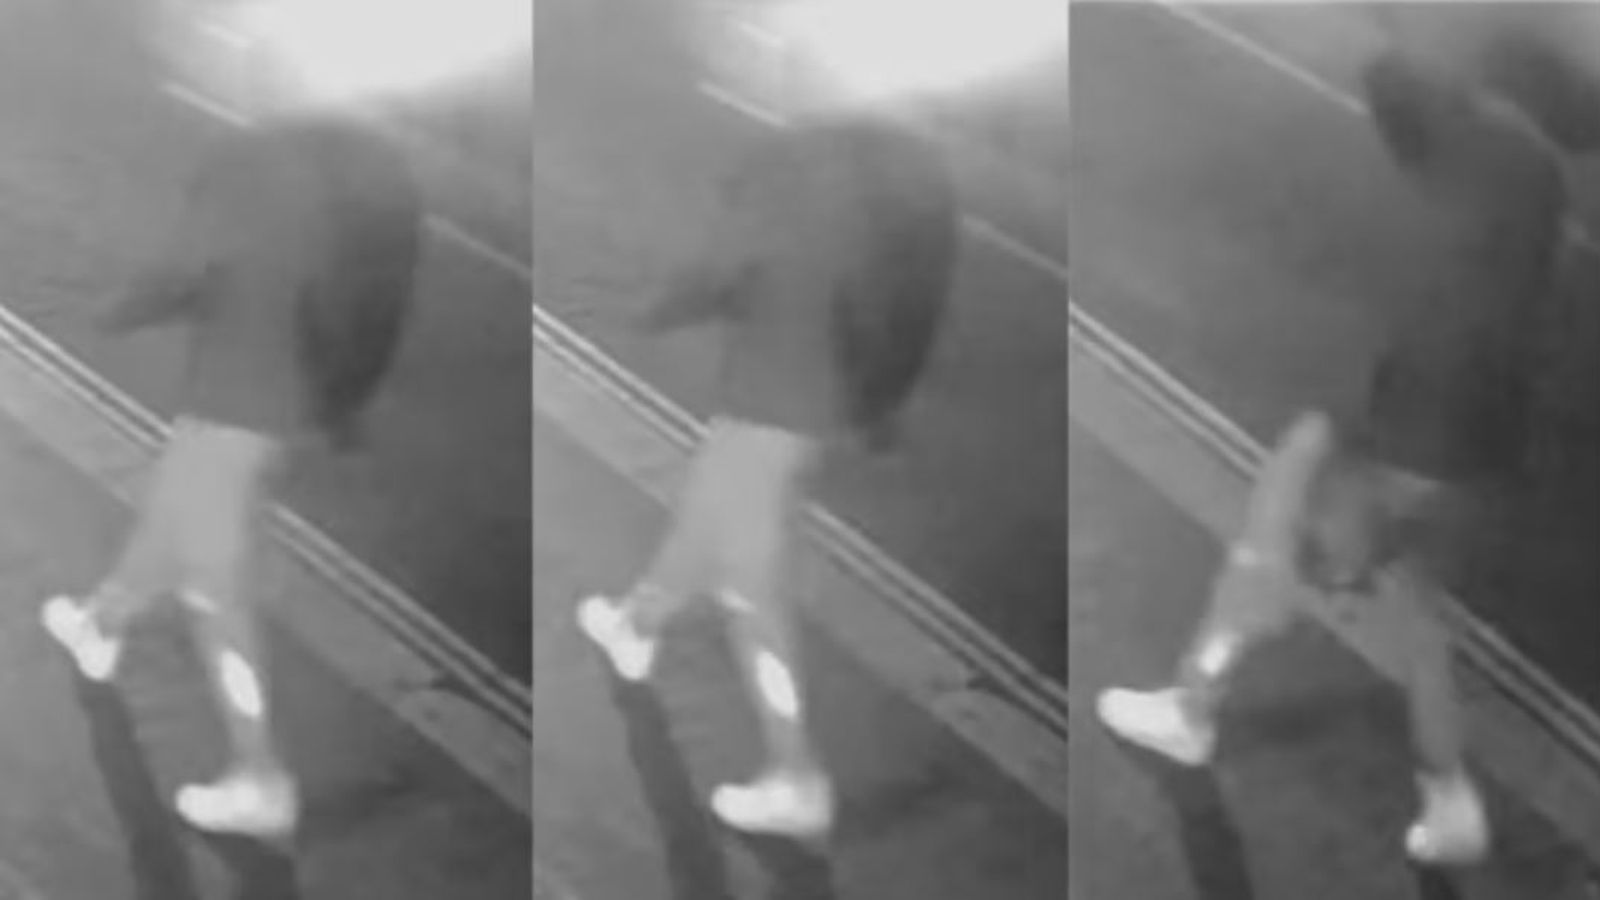 Des images de vidéosurveillance du meurtrier présumé de Daneche Tison ont été publiées quelques instants avant l’attaque |  Nouvelles du Royaume-Uni